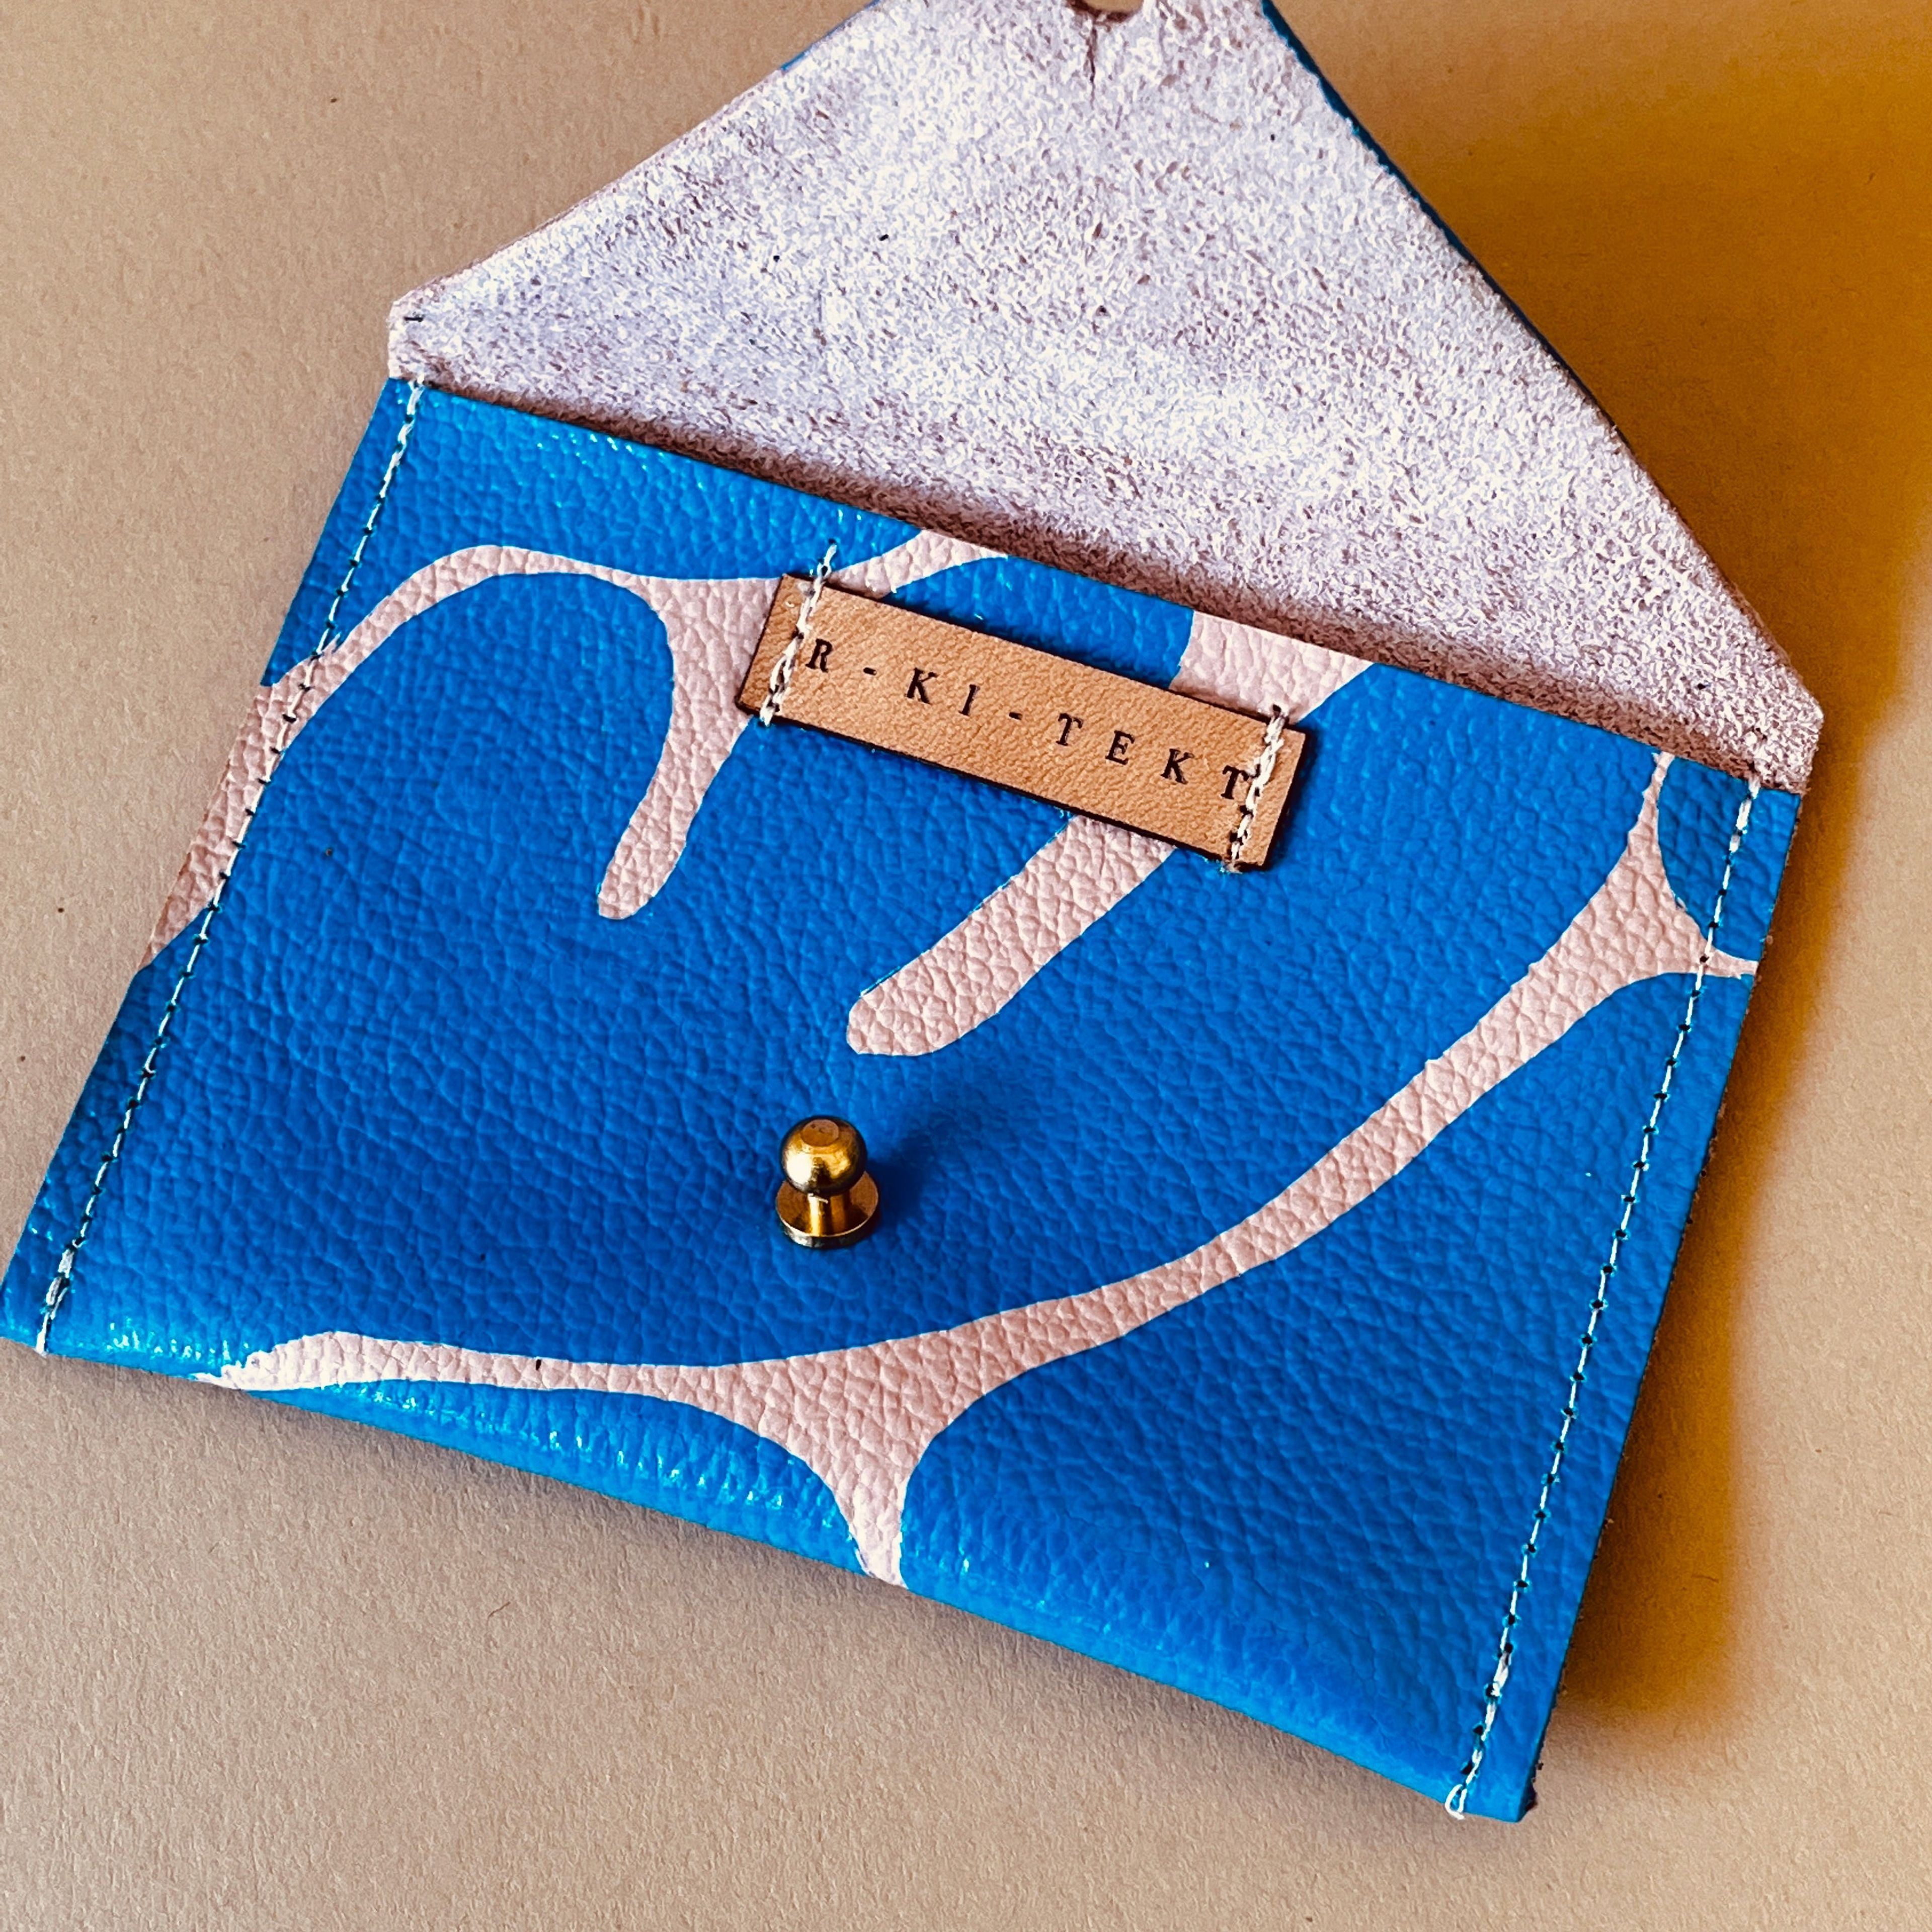 Leather Envelope Wallet - Card Holder - Mati